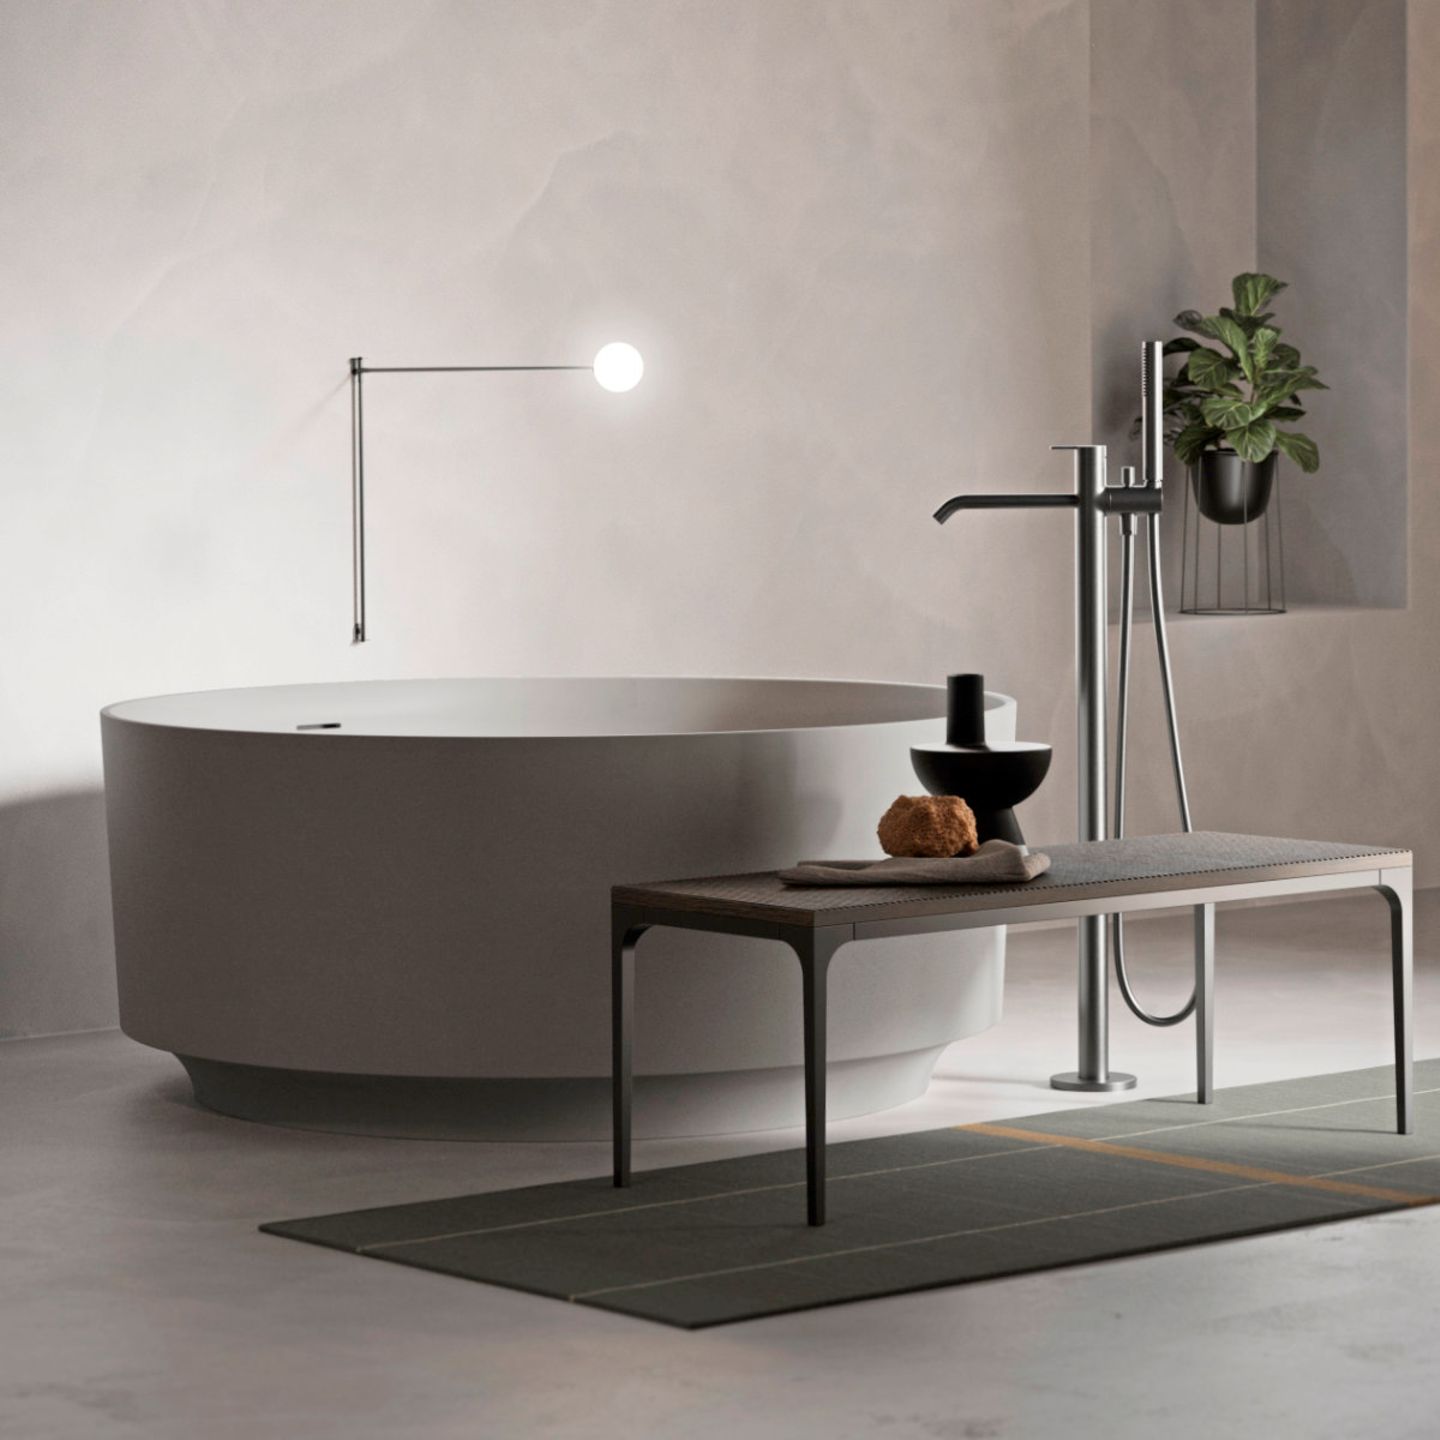 Luxuriöses Badezimmer mit kreisrunder, frei stehender Badewanne – entworfen von Norm Architects